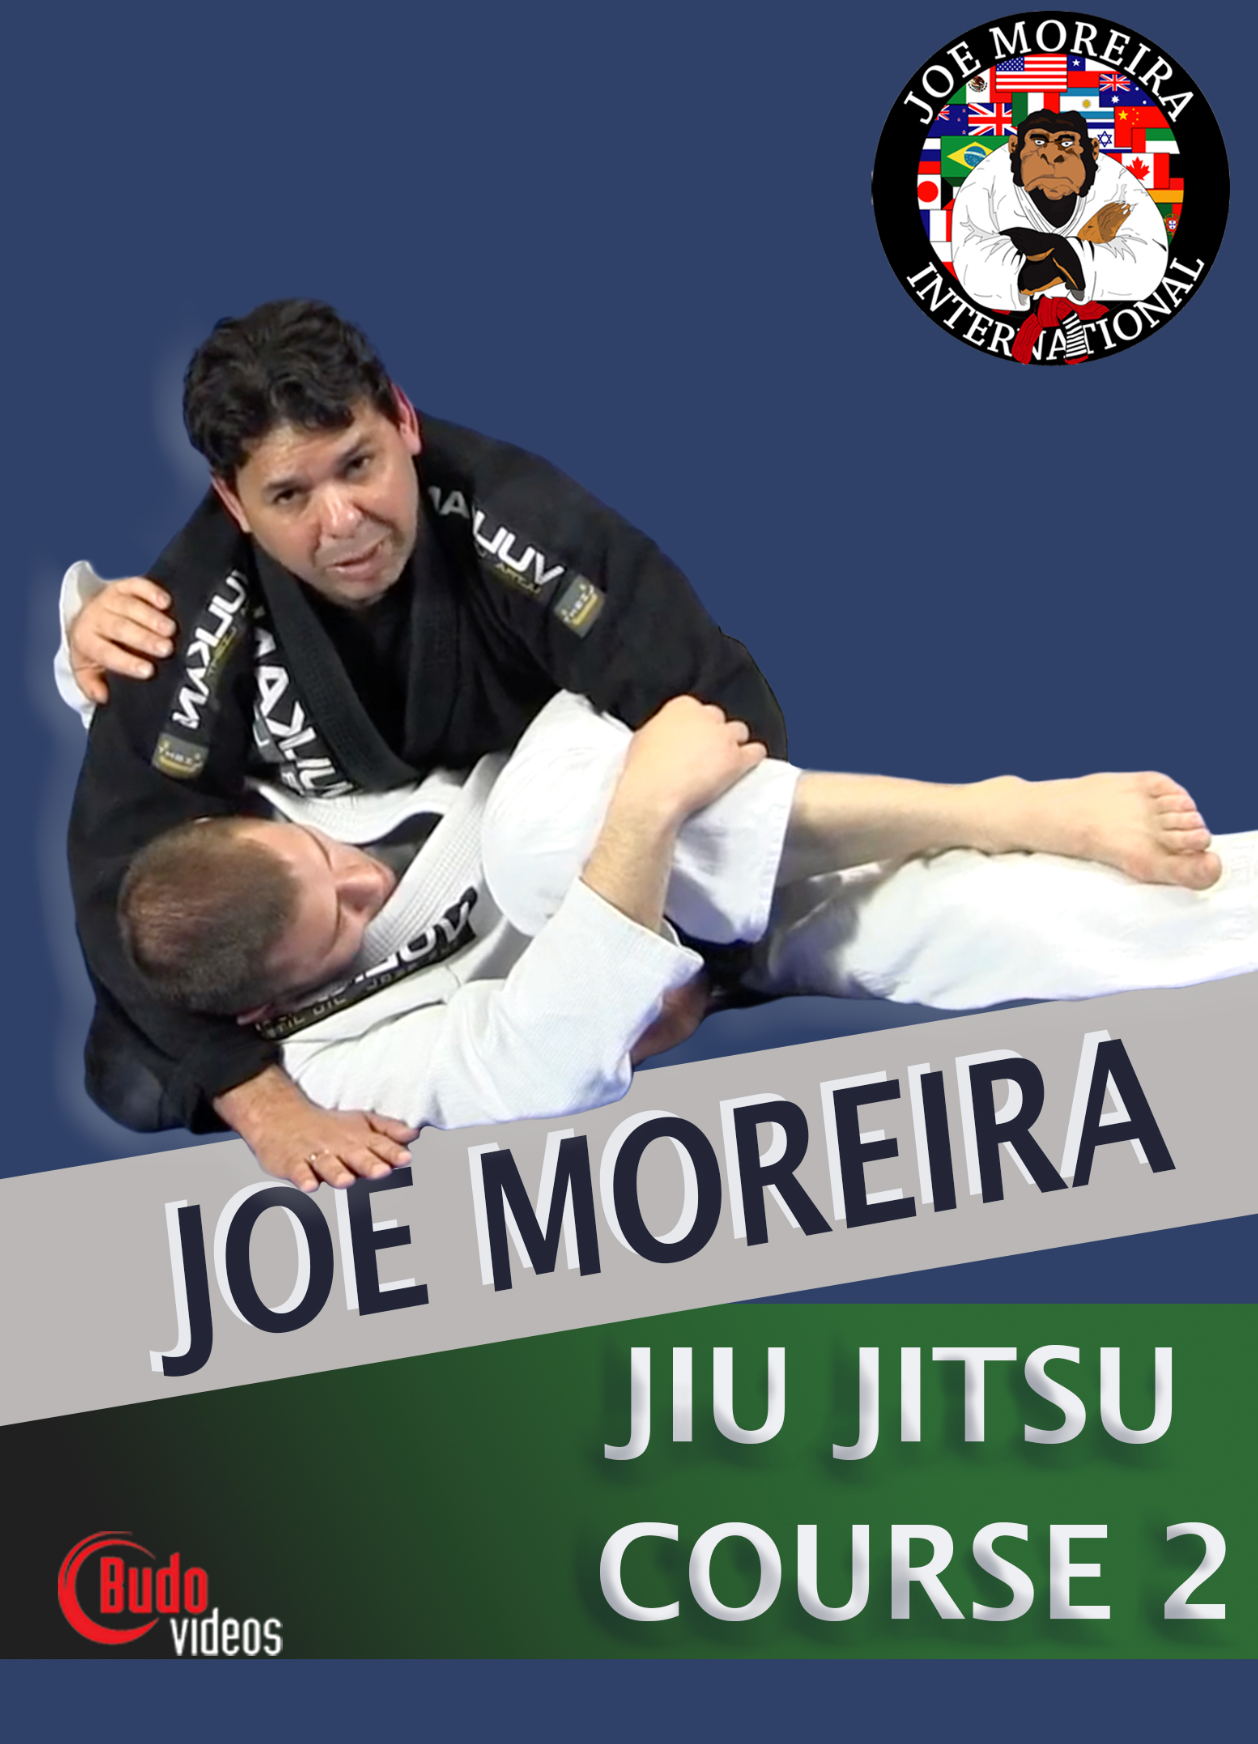 ジョー モレイラ柔術コース 2 (6 DVD セット) 